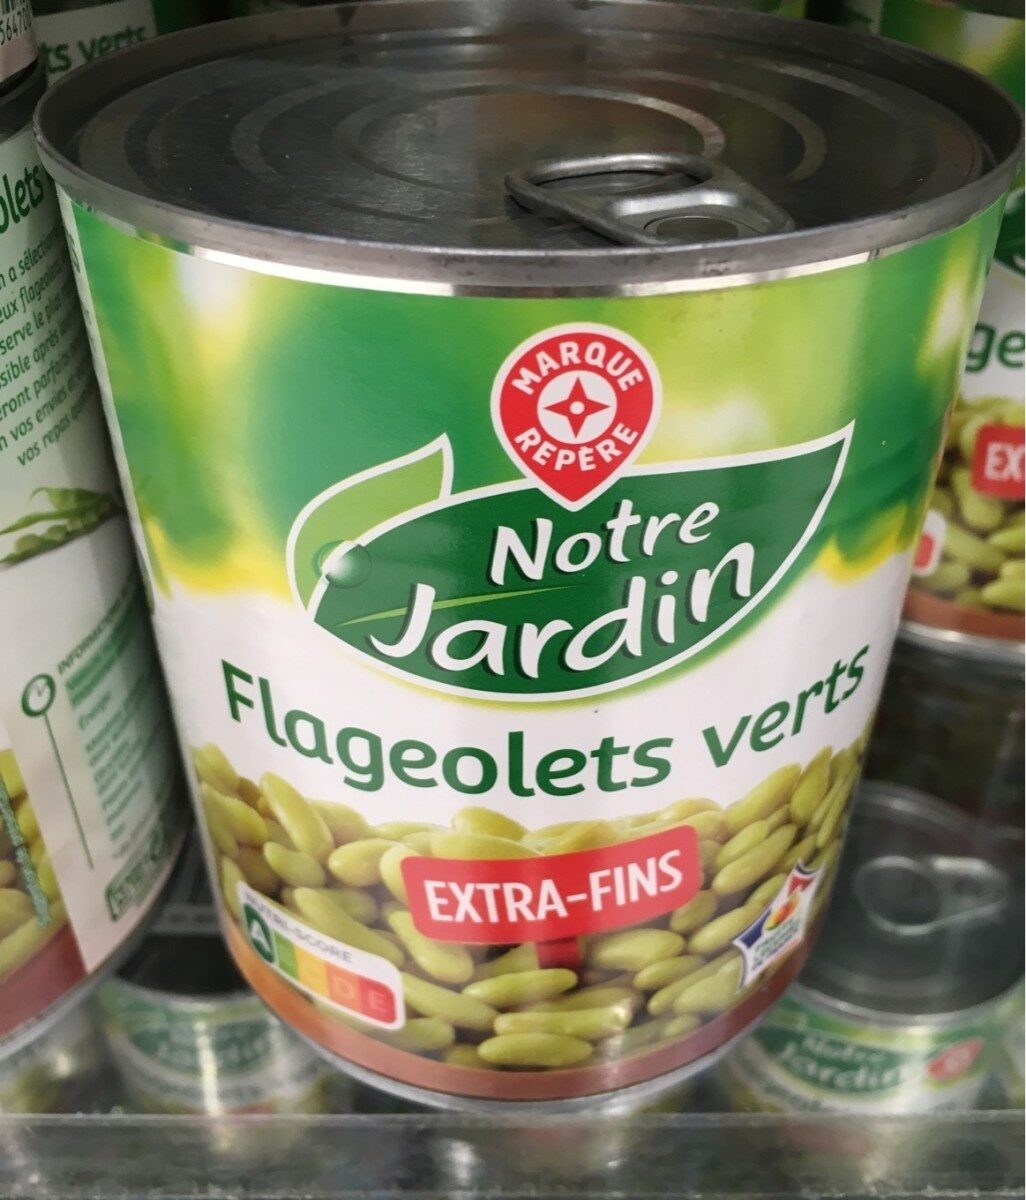 Flageolets verts extra fins 4/4 - Produkt - fr